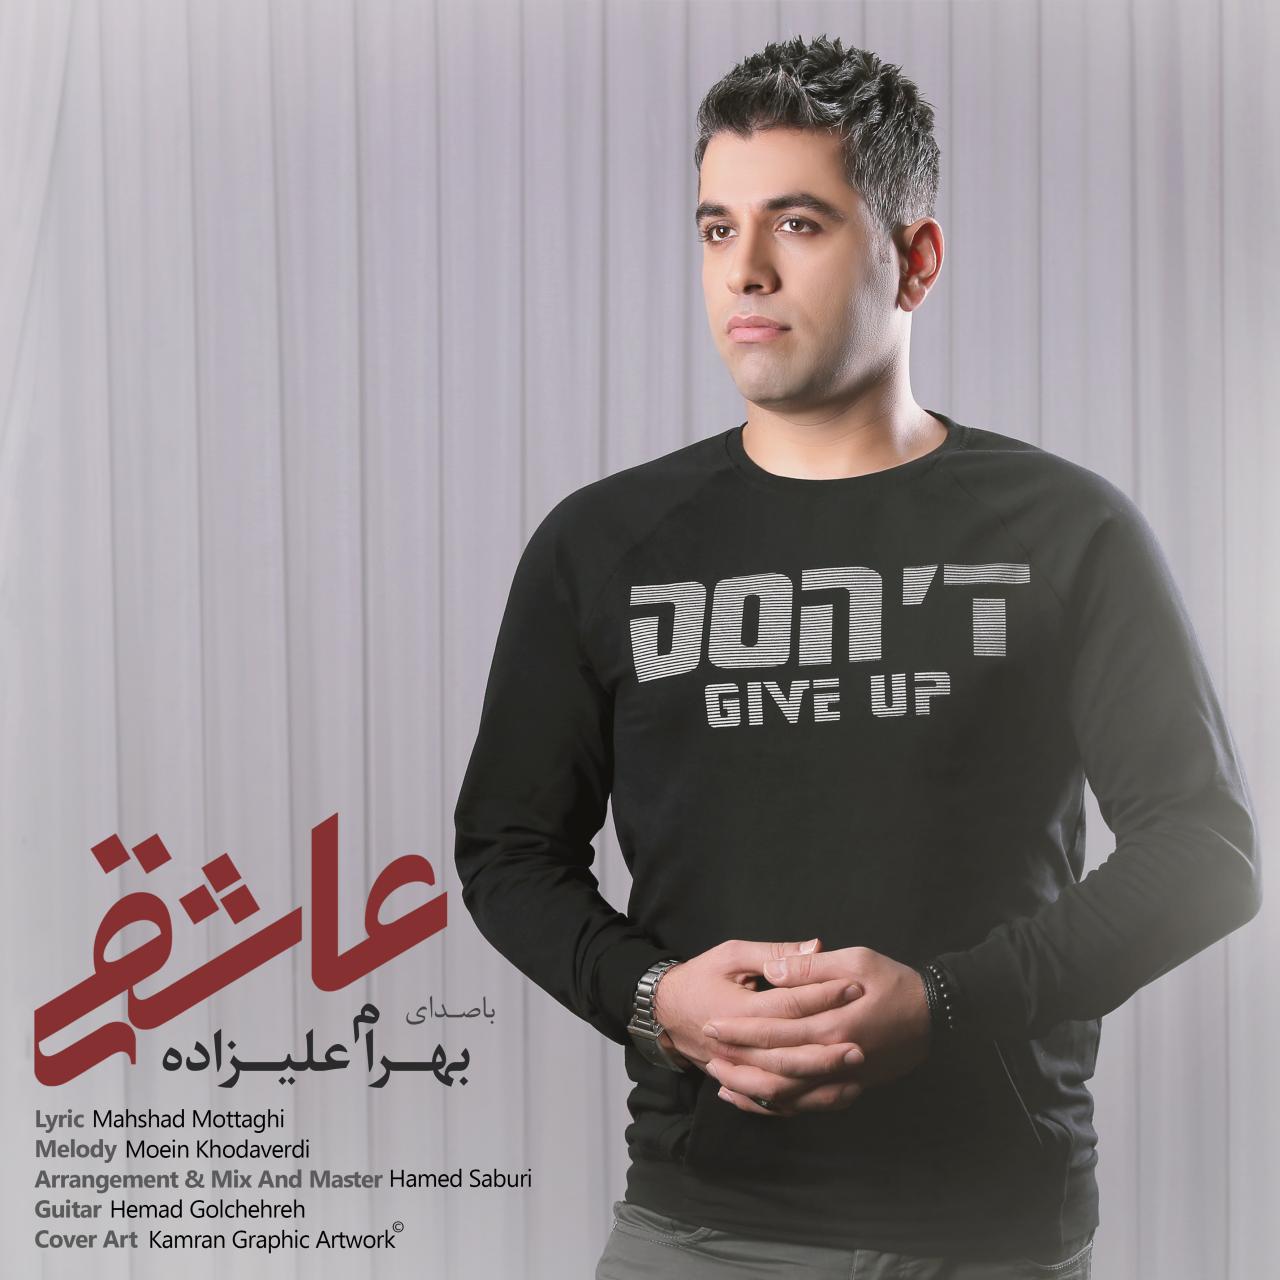  دانلود آهنگ جدید بهرام علیزاده - عاشقی | Download New Music By Bahram Alizadeh - Asheghi